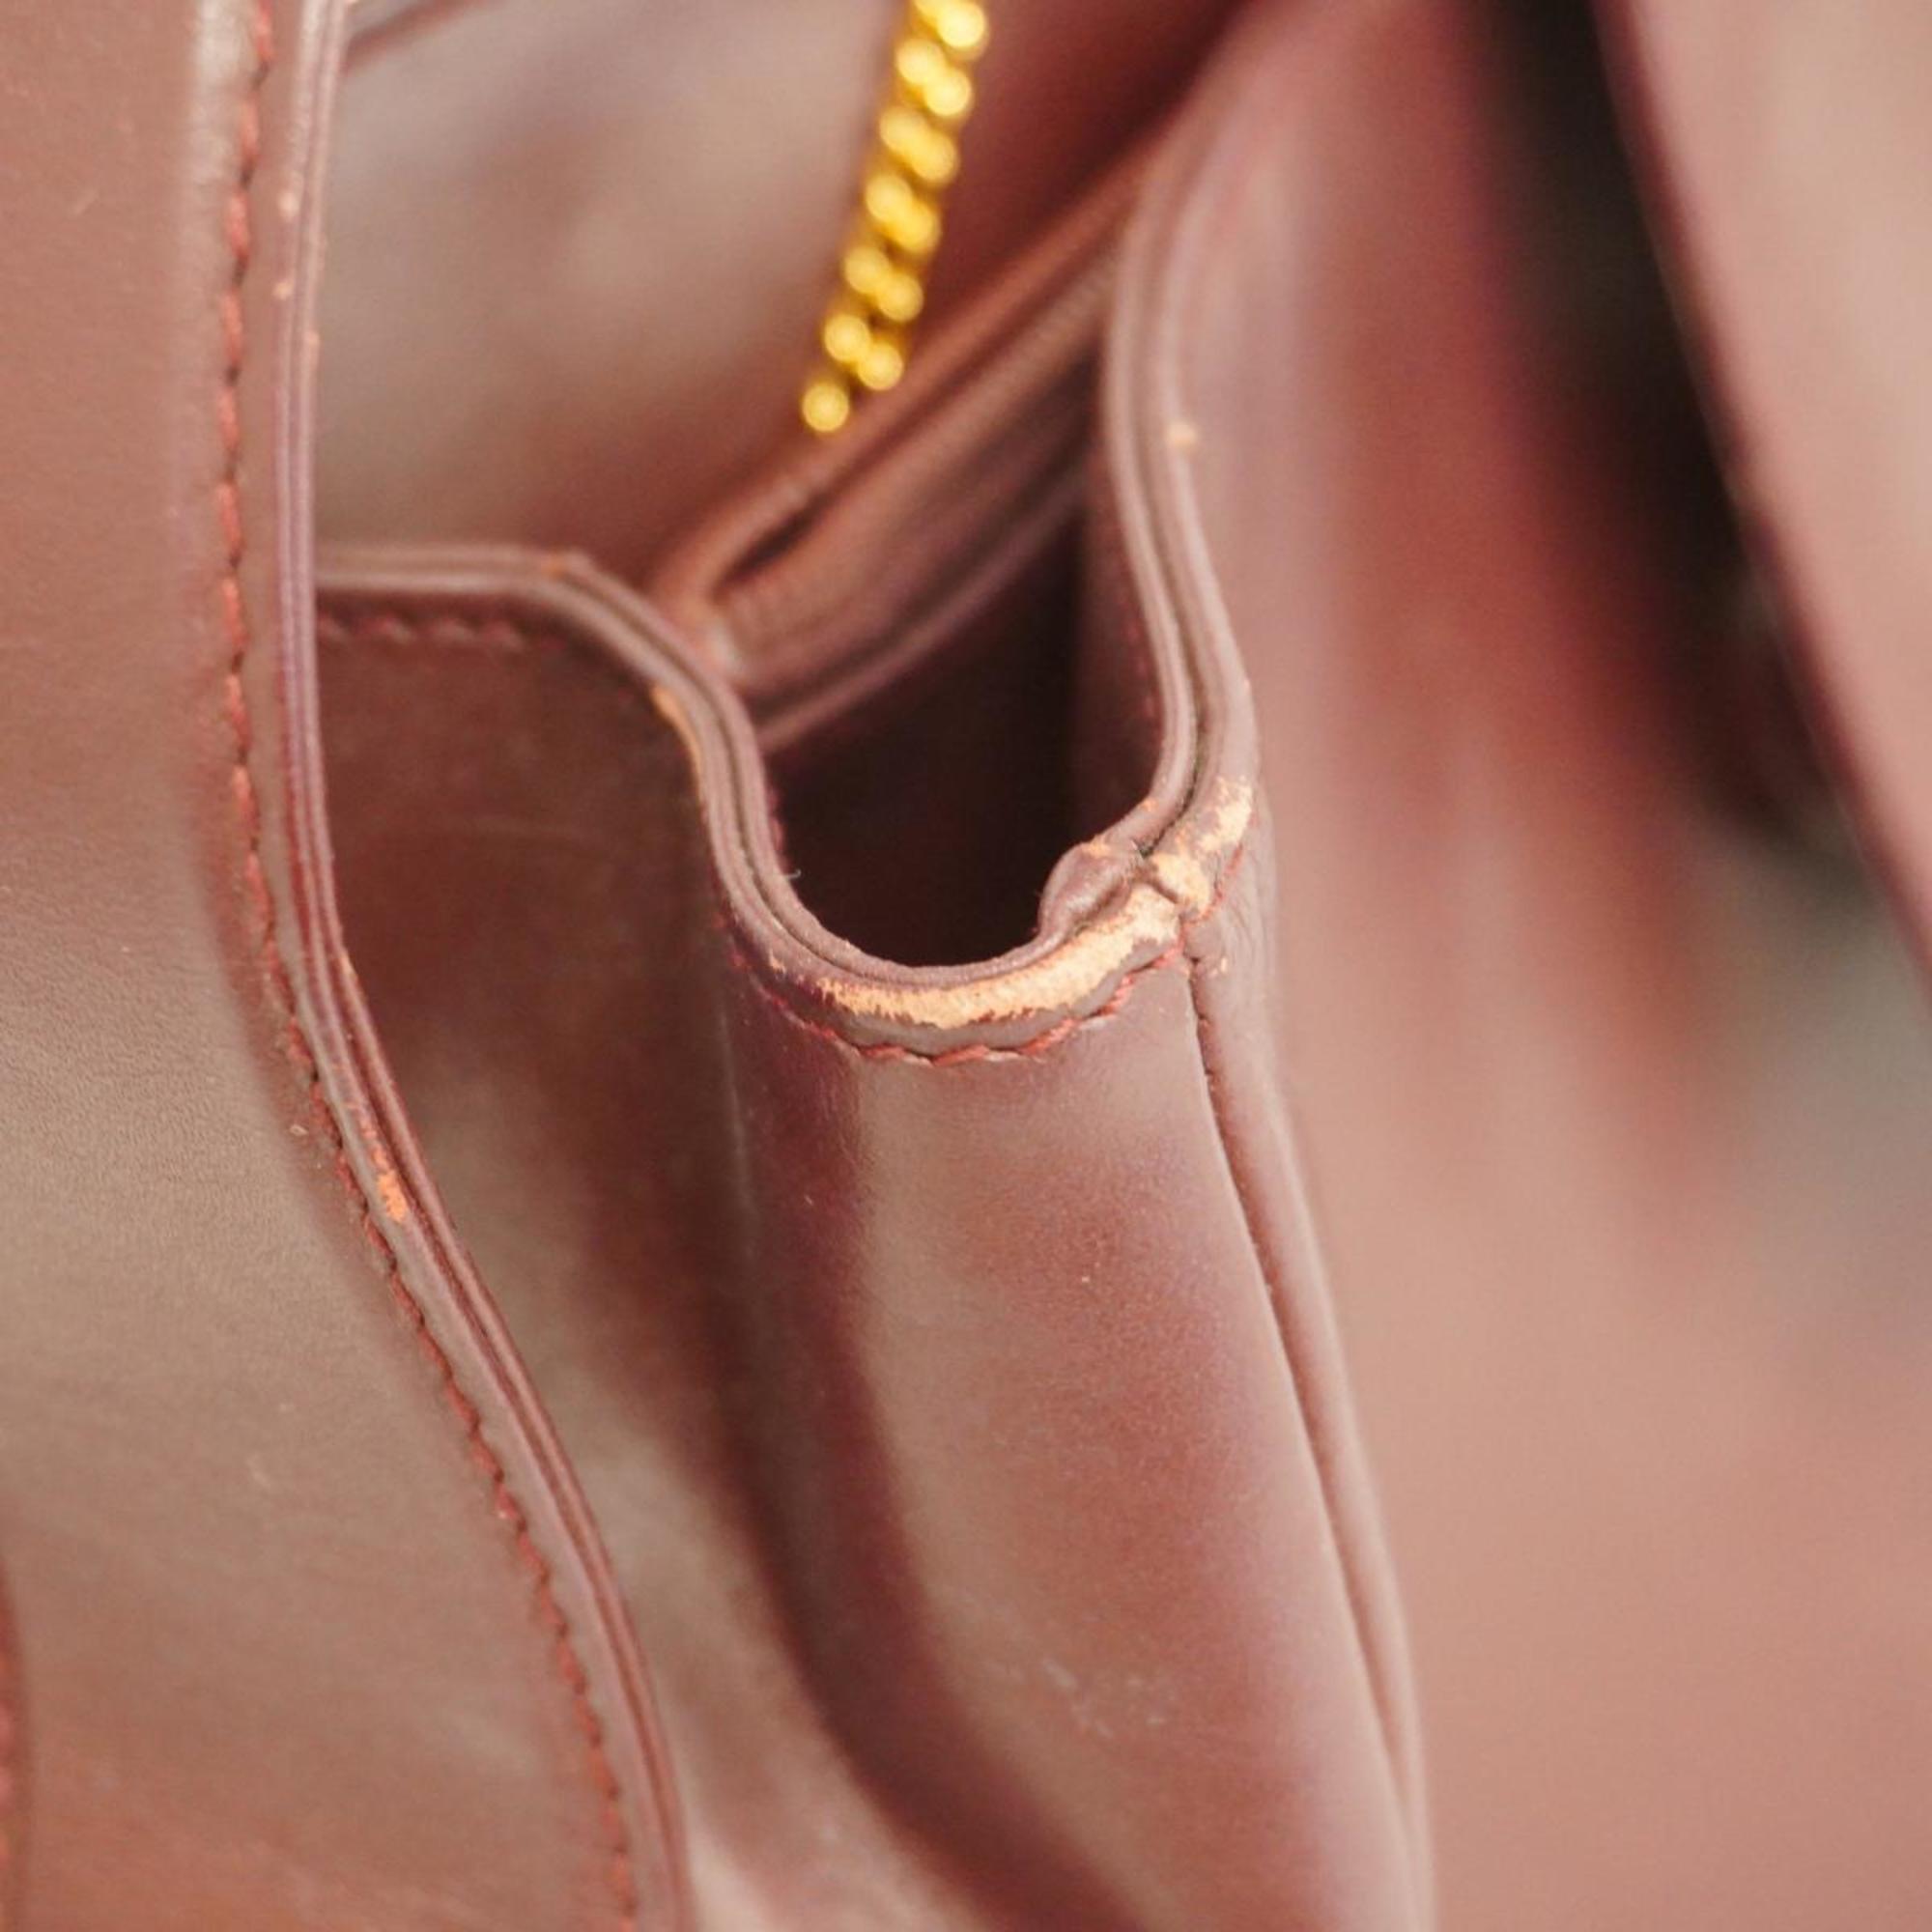 Cartier Shoulder Bag Must Leather Bordeaux Women's